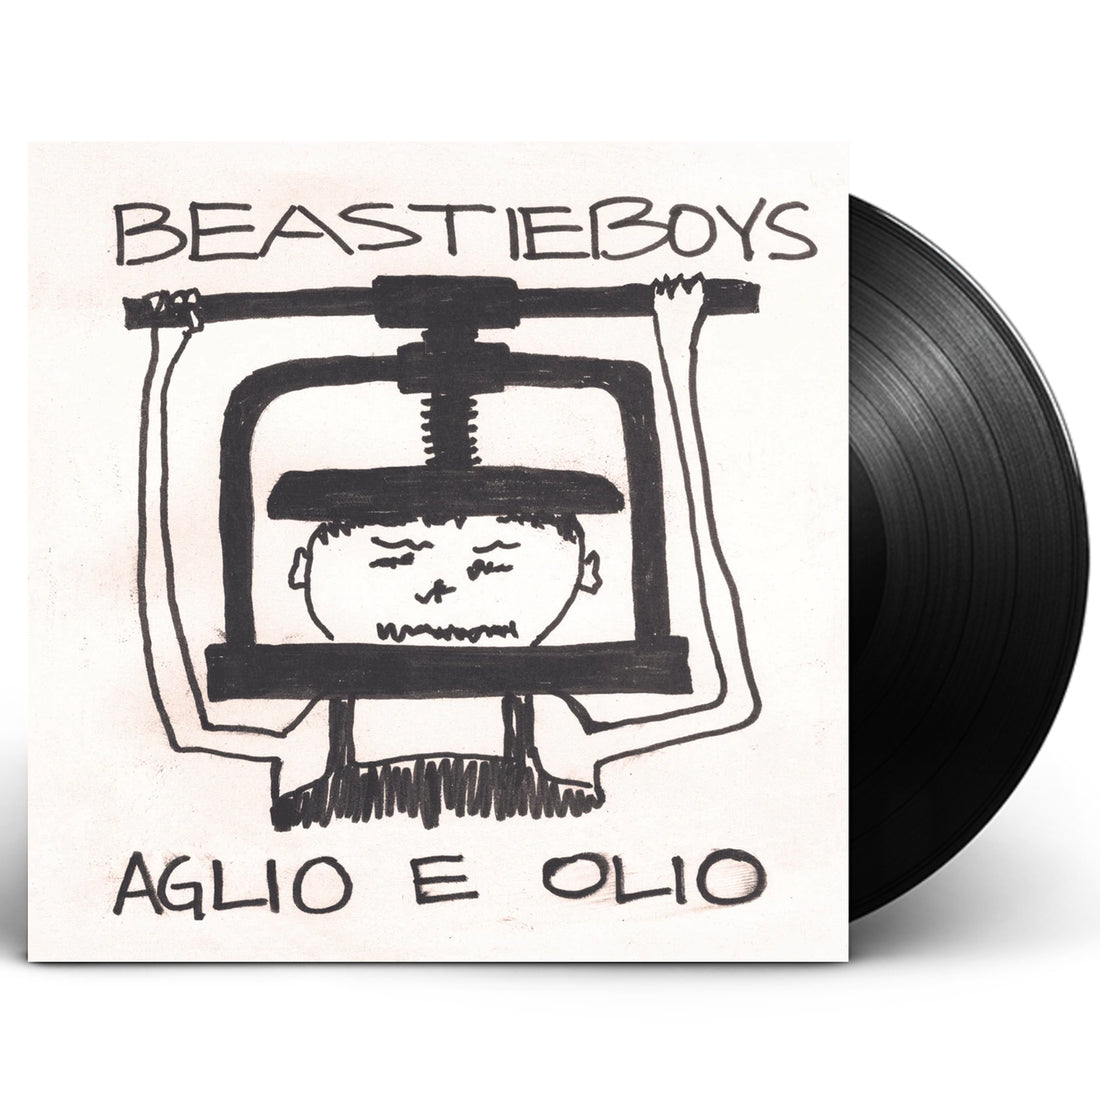 Beastie Boys "Aglio E Olio" LP Vinyl